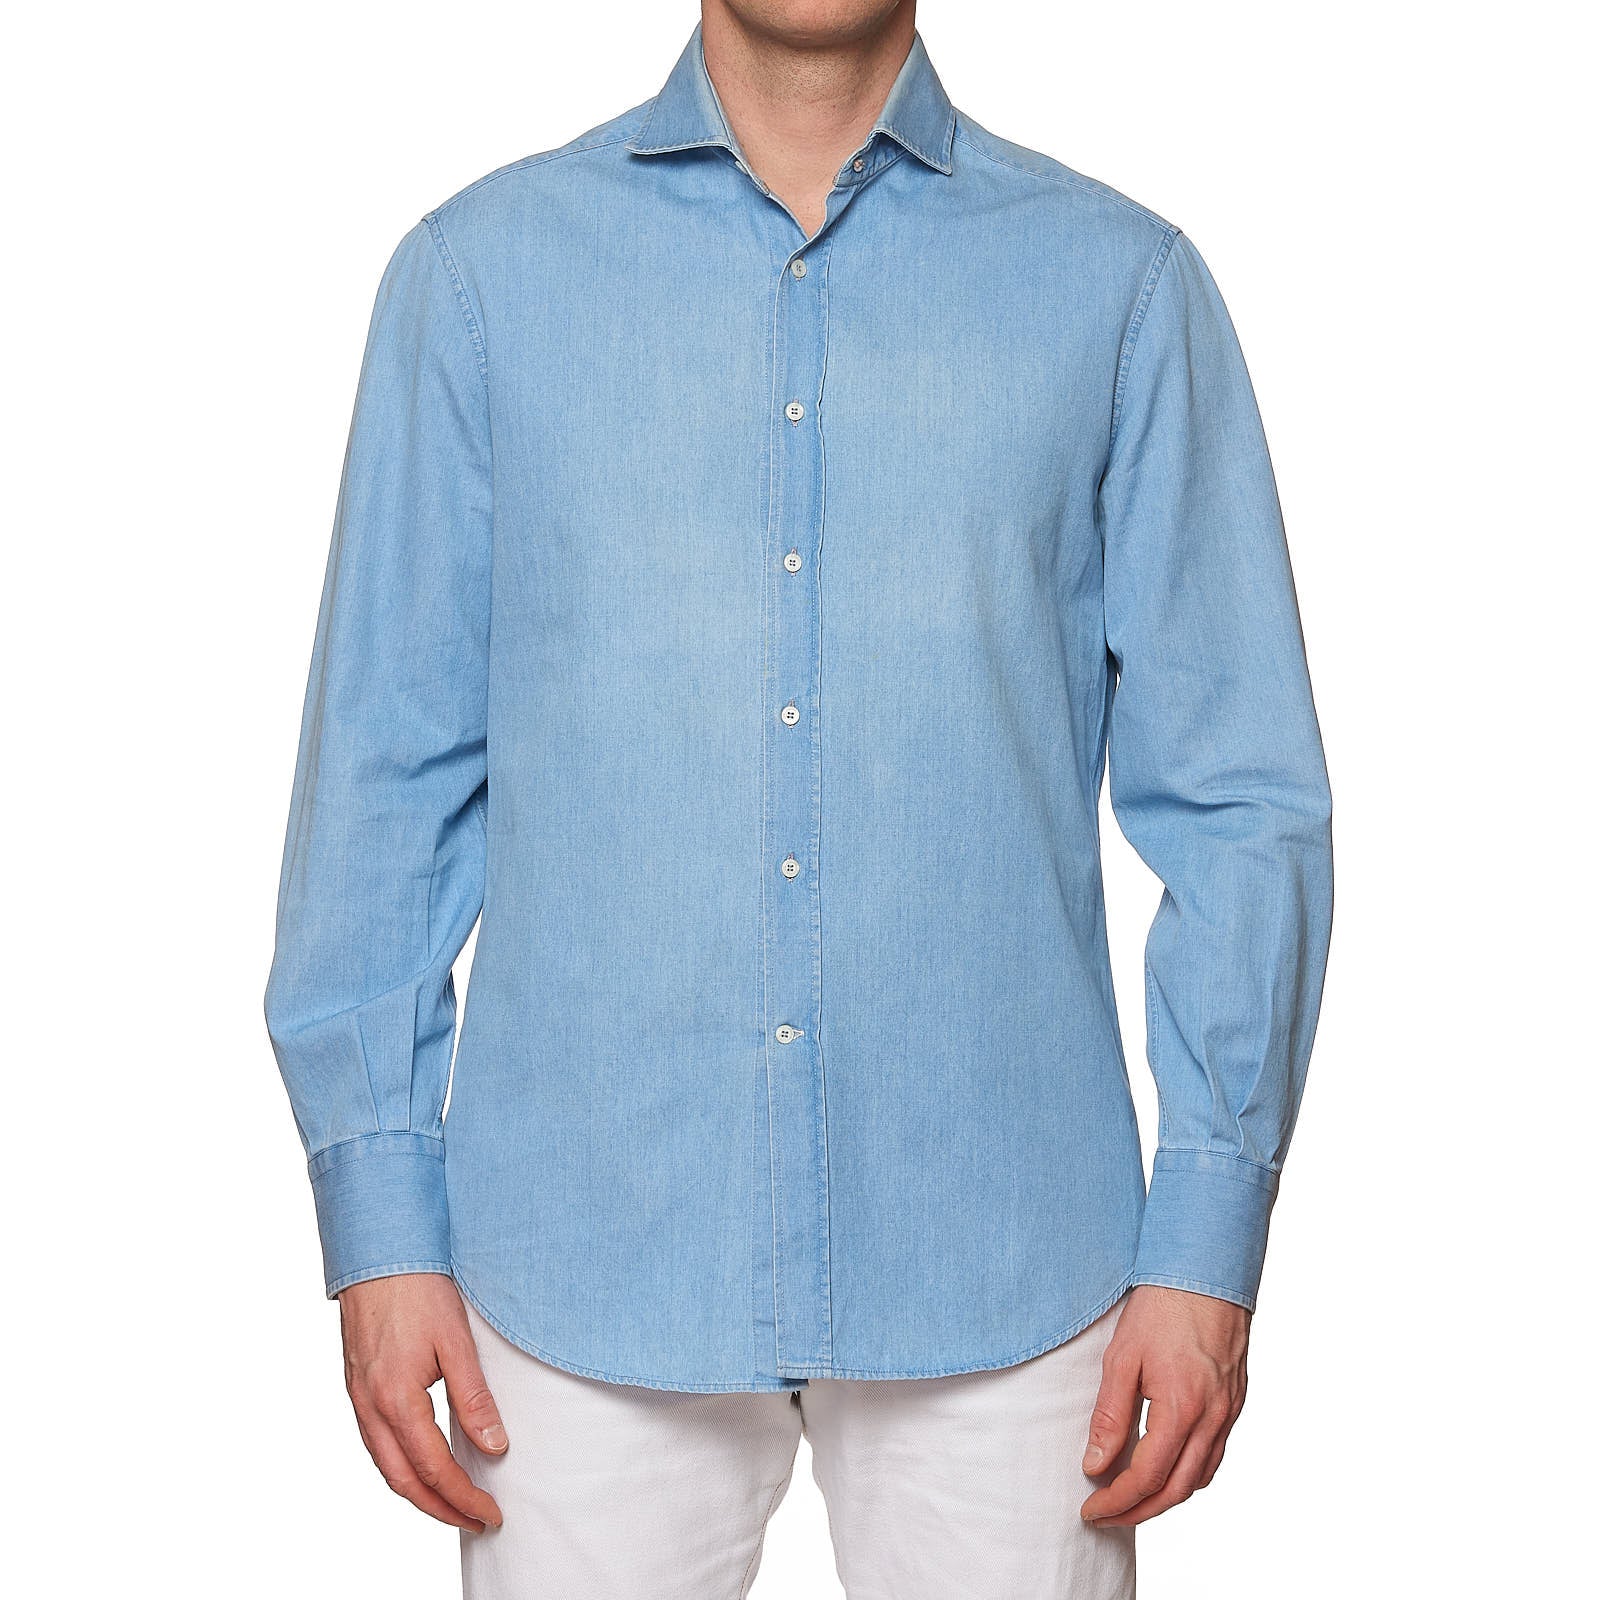 Brunello Cucinelli shirt in cotton